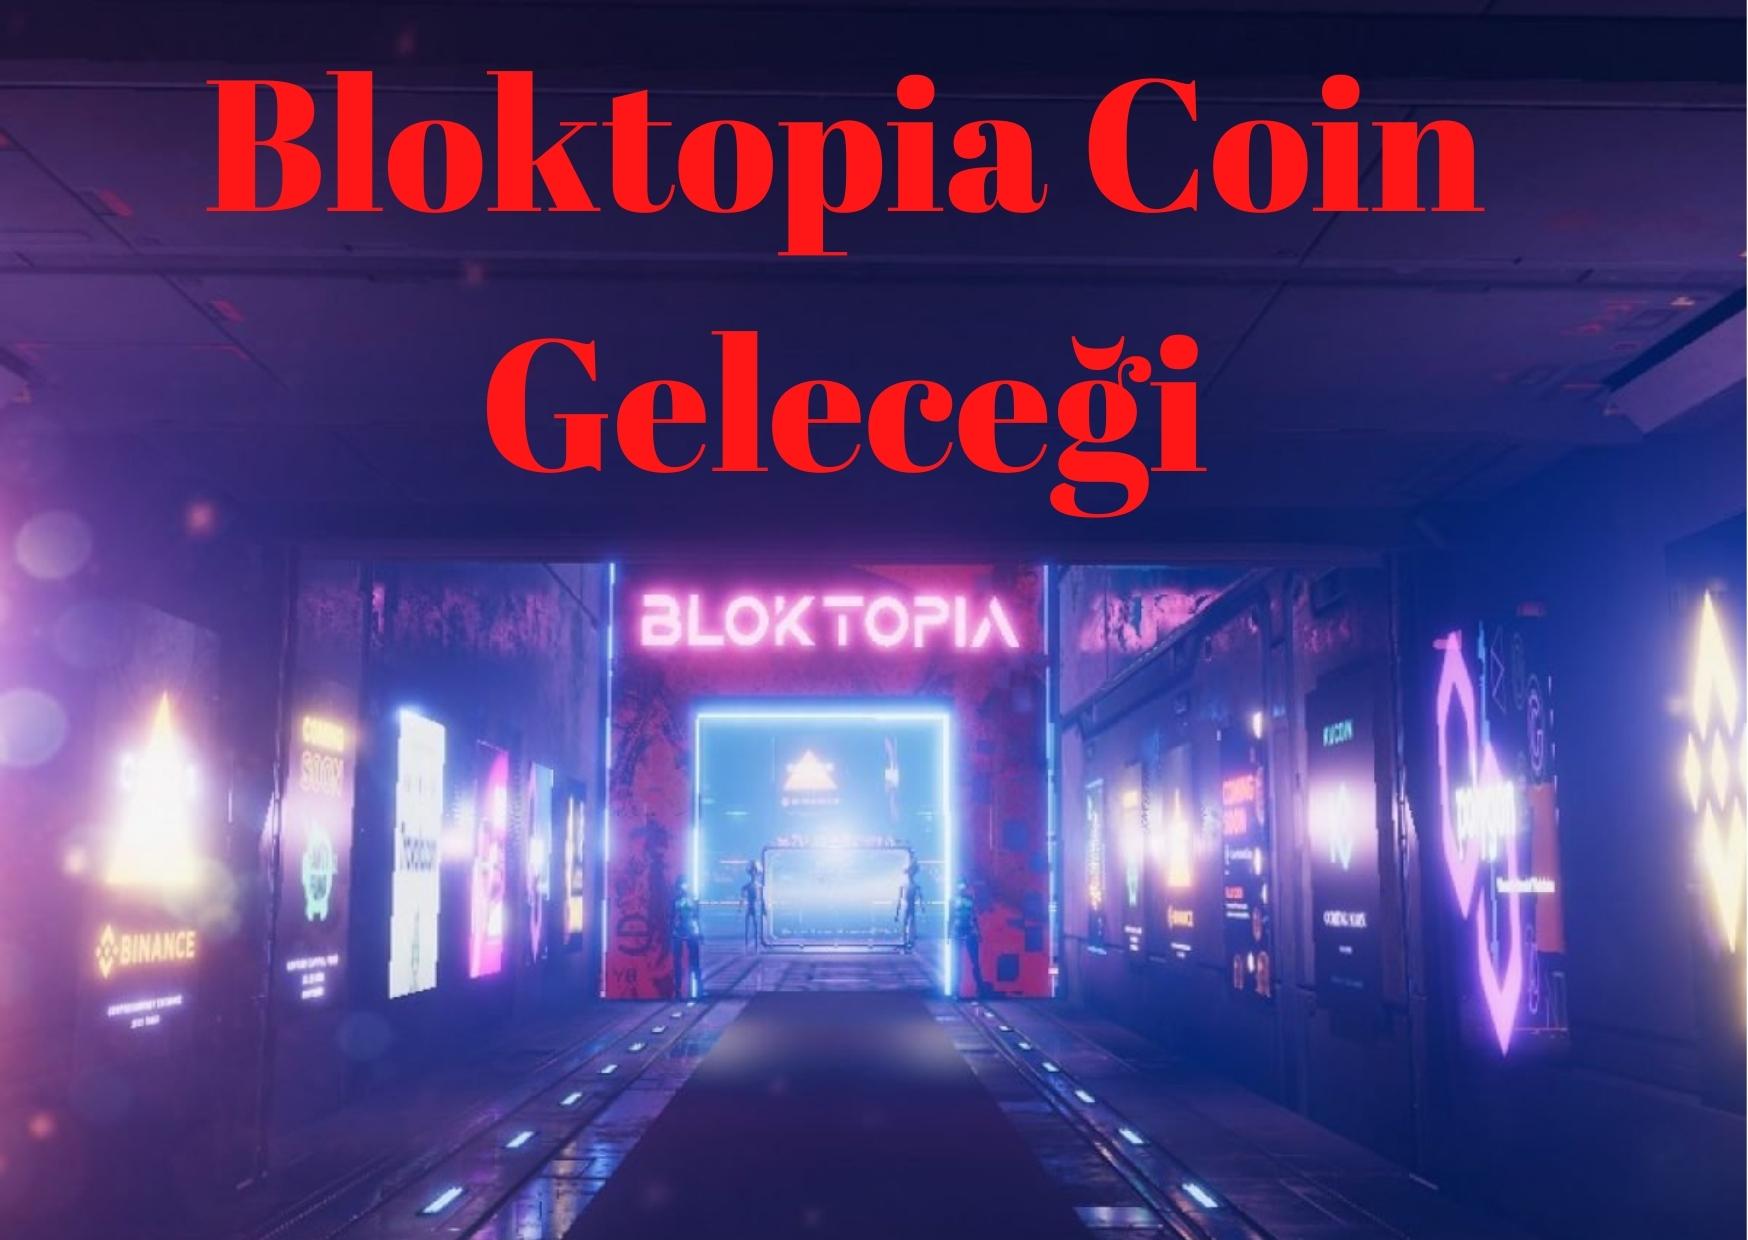 Bloktopia Coin Geleceği